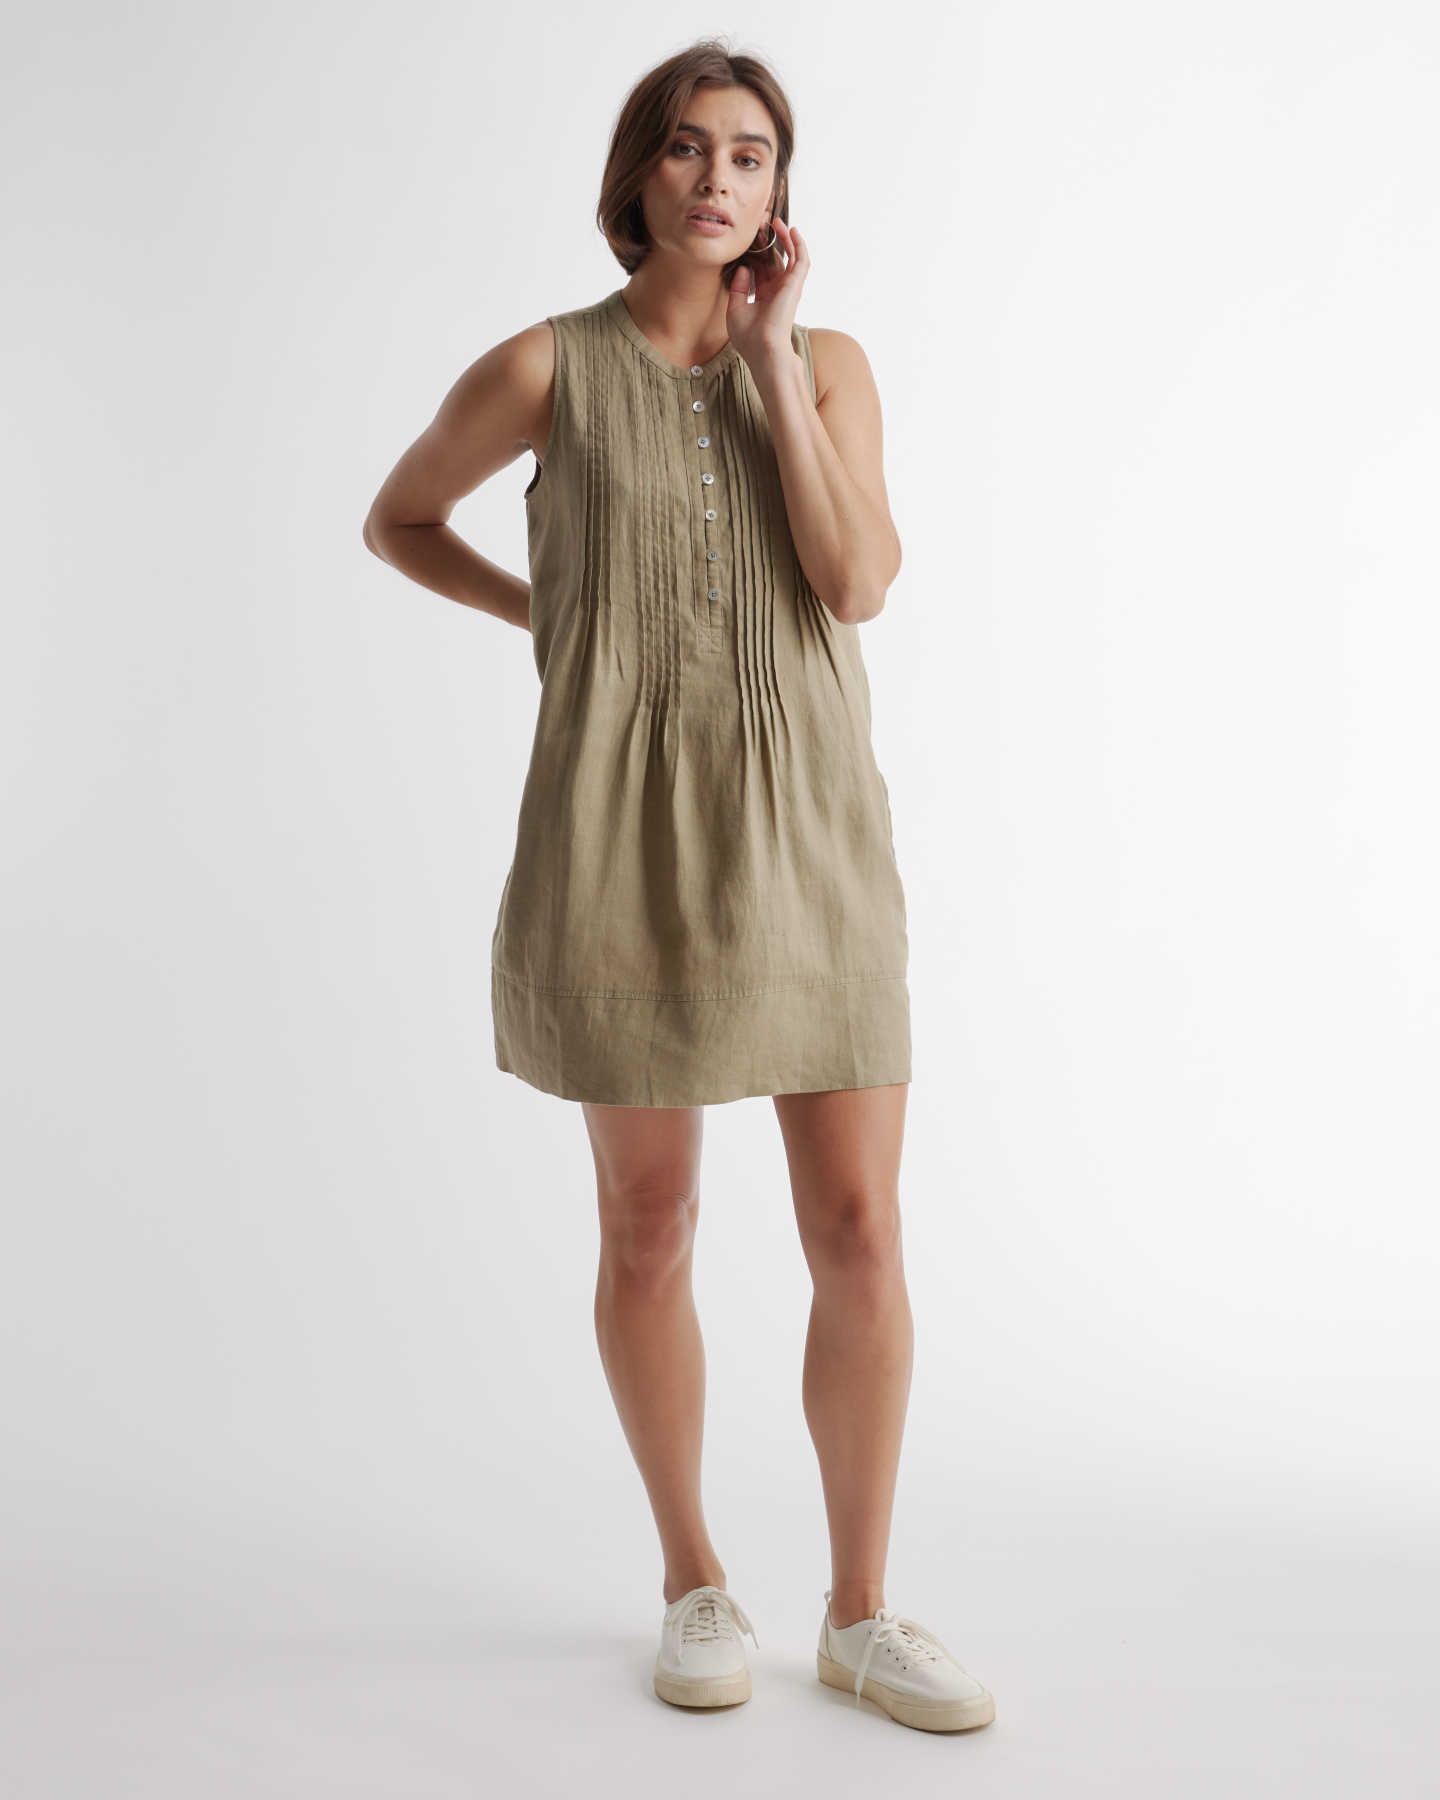 100% European Linen Sleeveless Swing Dress - Olive - 4